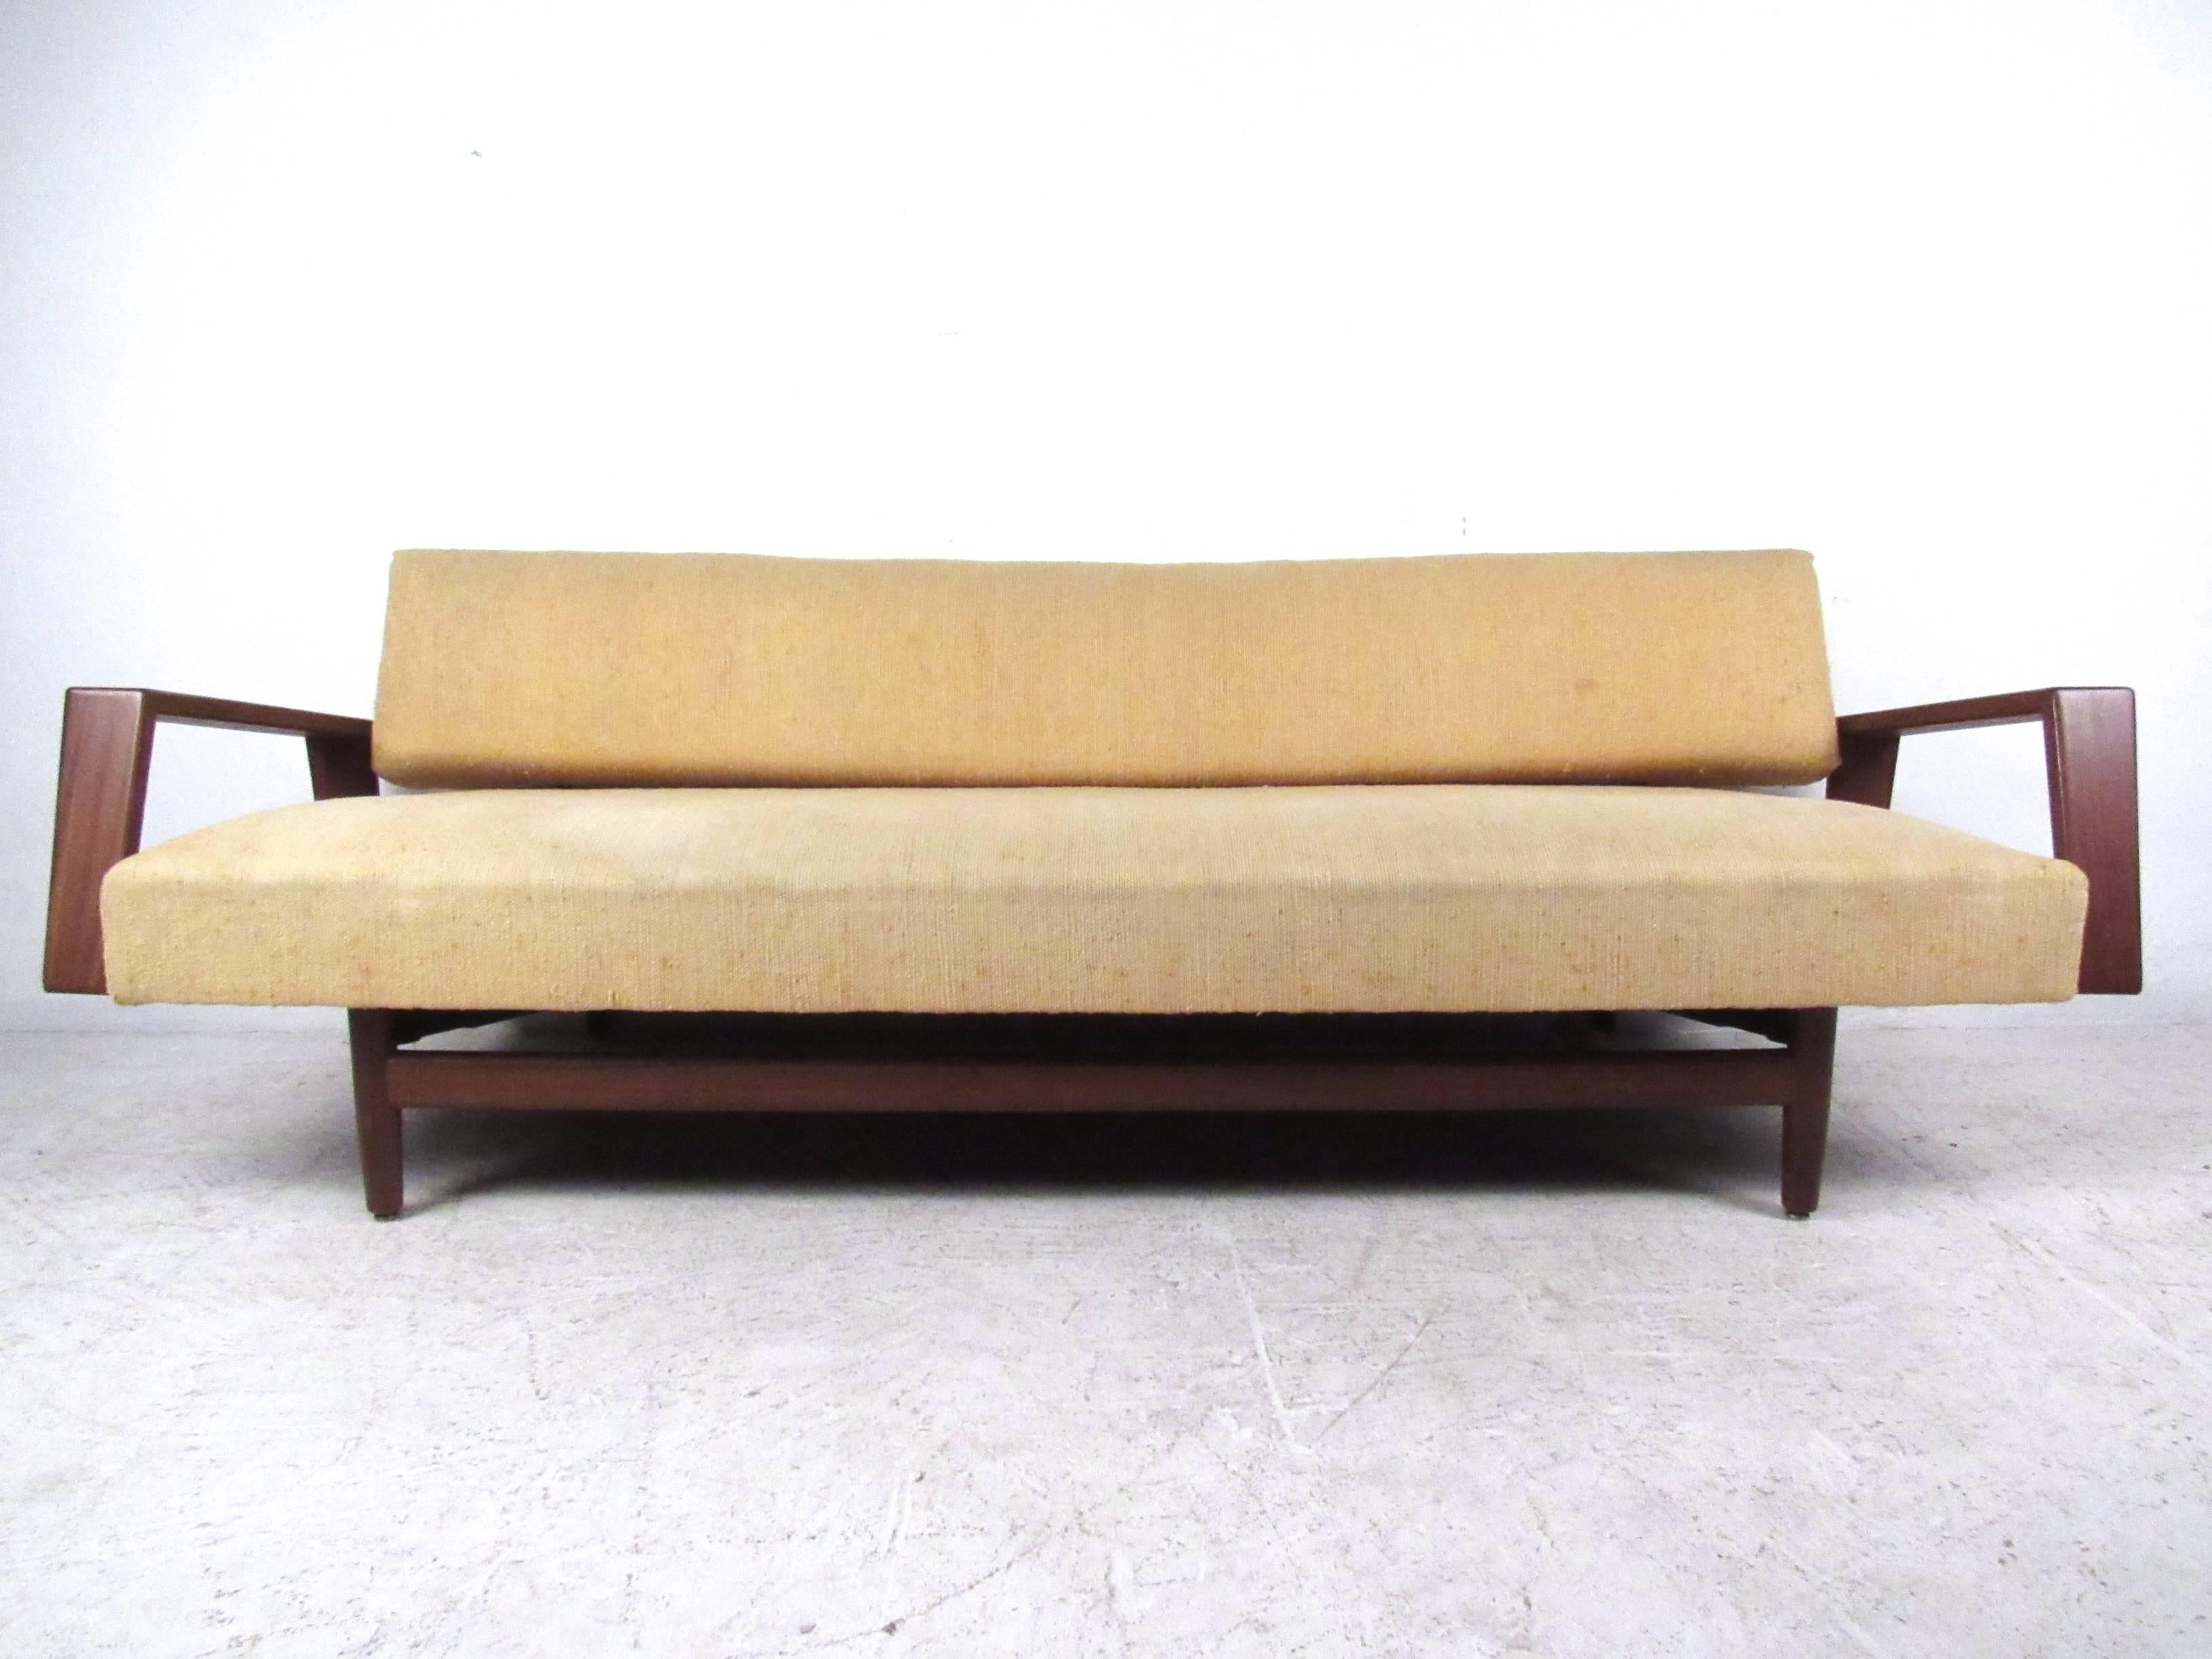 Dieses einzigartige Vintage-Sofa bietet komfortable Sitzgelegenheiten in einem stilvollen Paket. Die breiten, geschwungenen Armlehnen und die konisch zulaufenden Beine unterstreichen den Stil des Sofas und machen es zu einem großartigen Möbel für